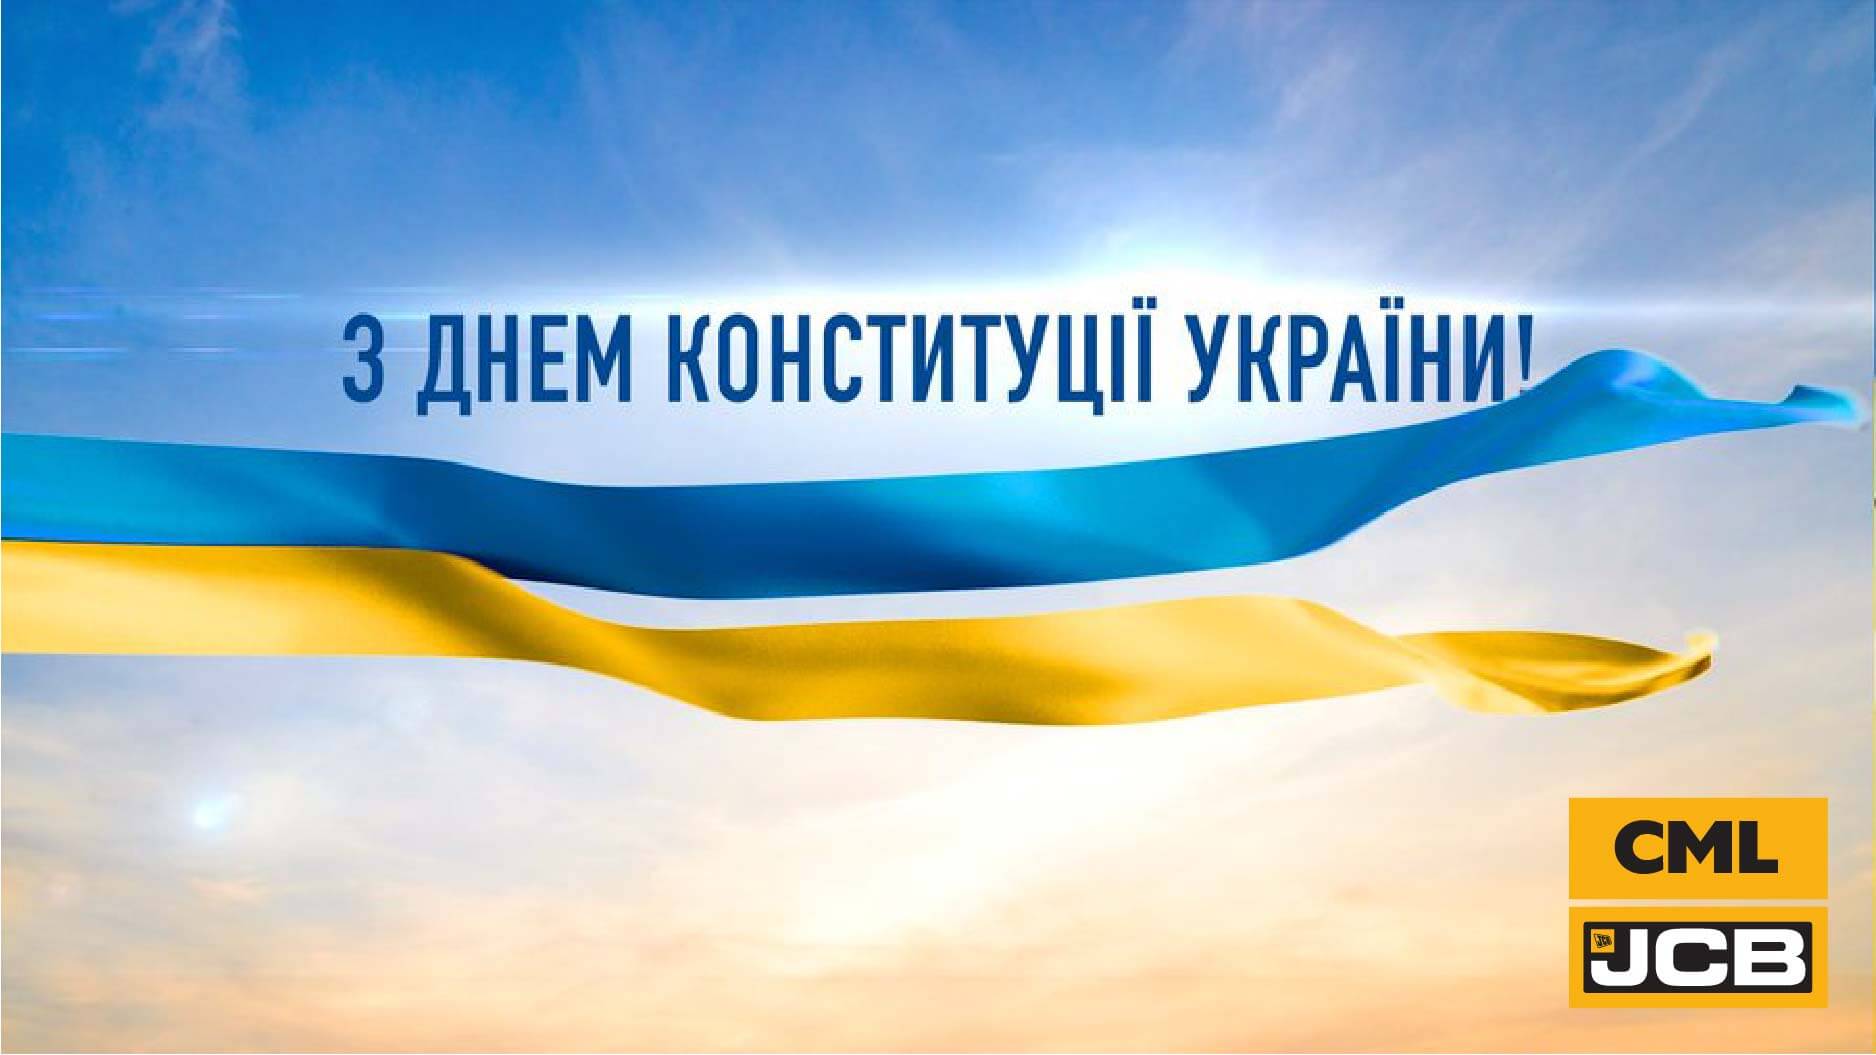 Прийміть щирі вітання з Днем Конституції України!